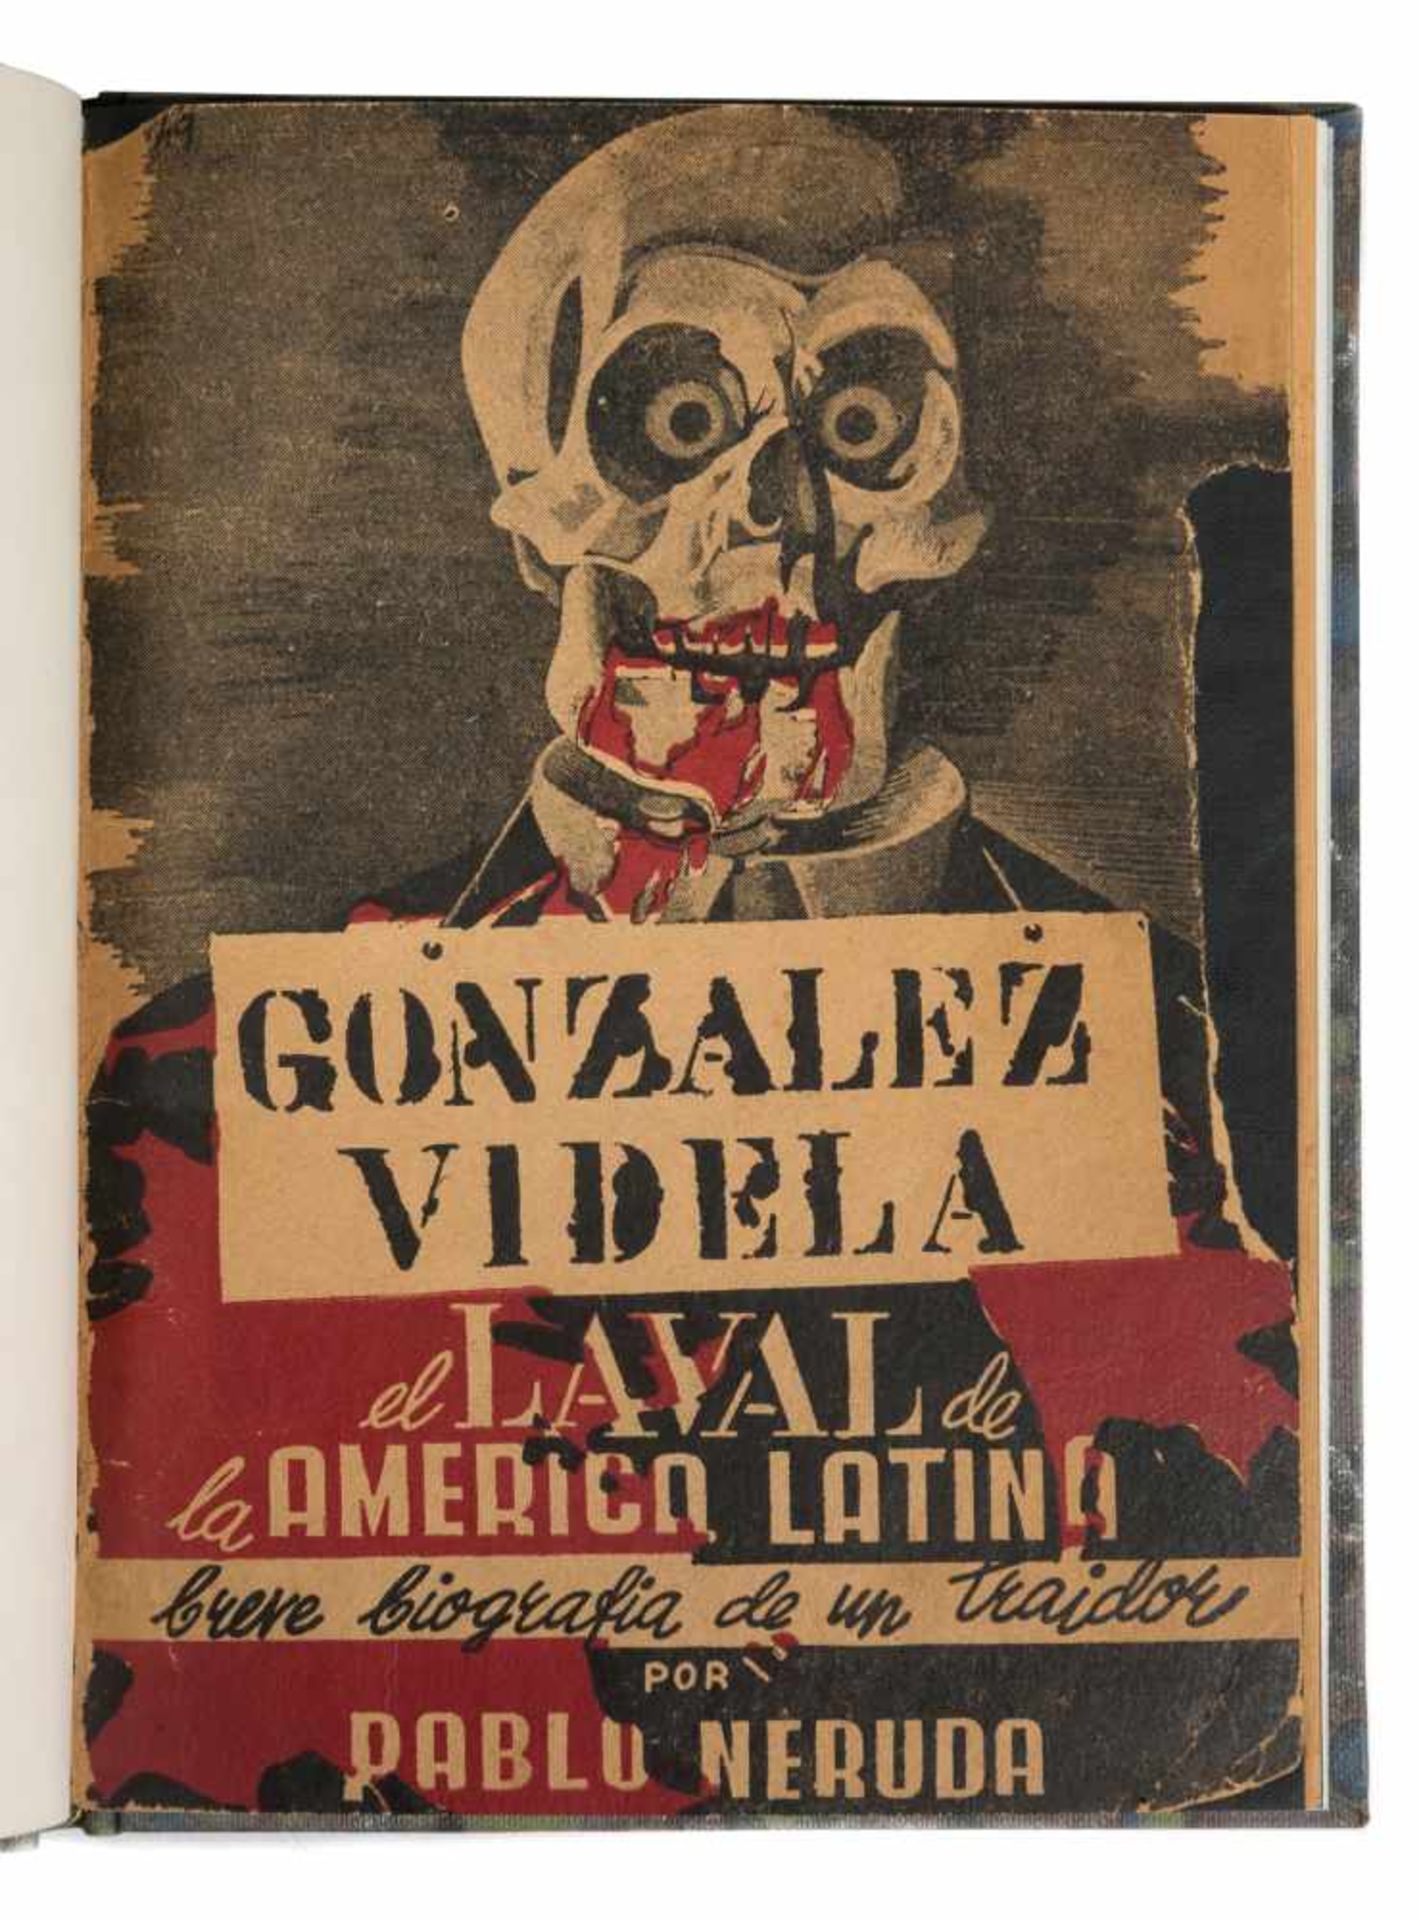 Neruda, Pablo. "González Videla: el laval de América Latina: breve biografía de un traidor". 1st